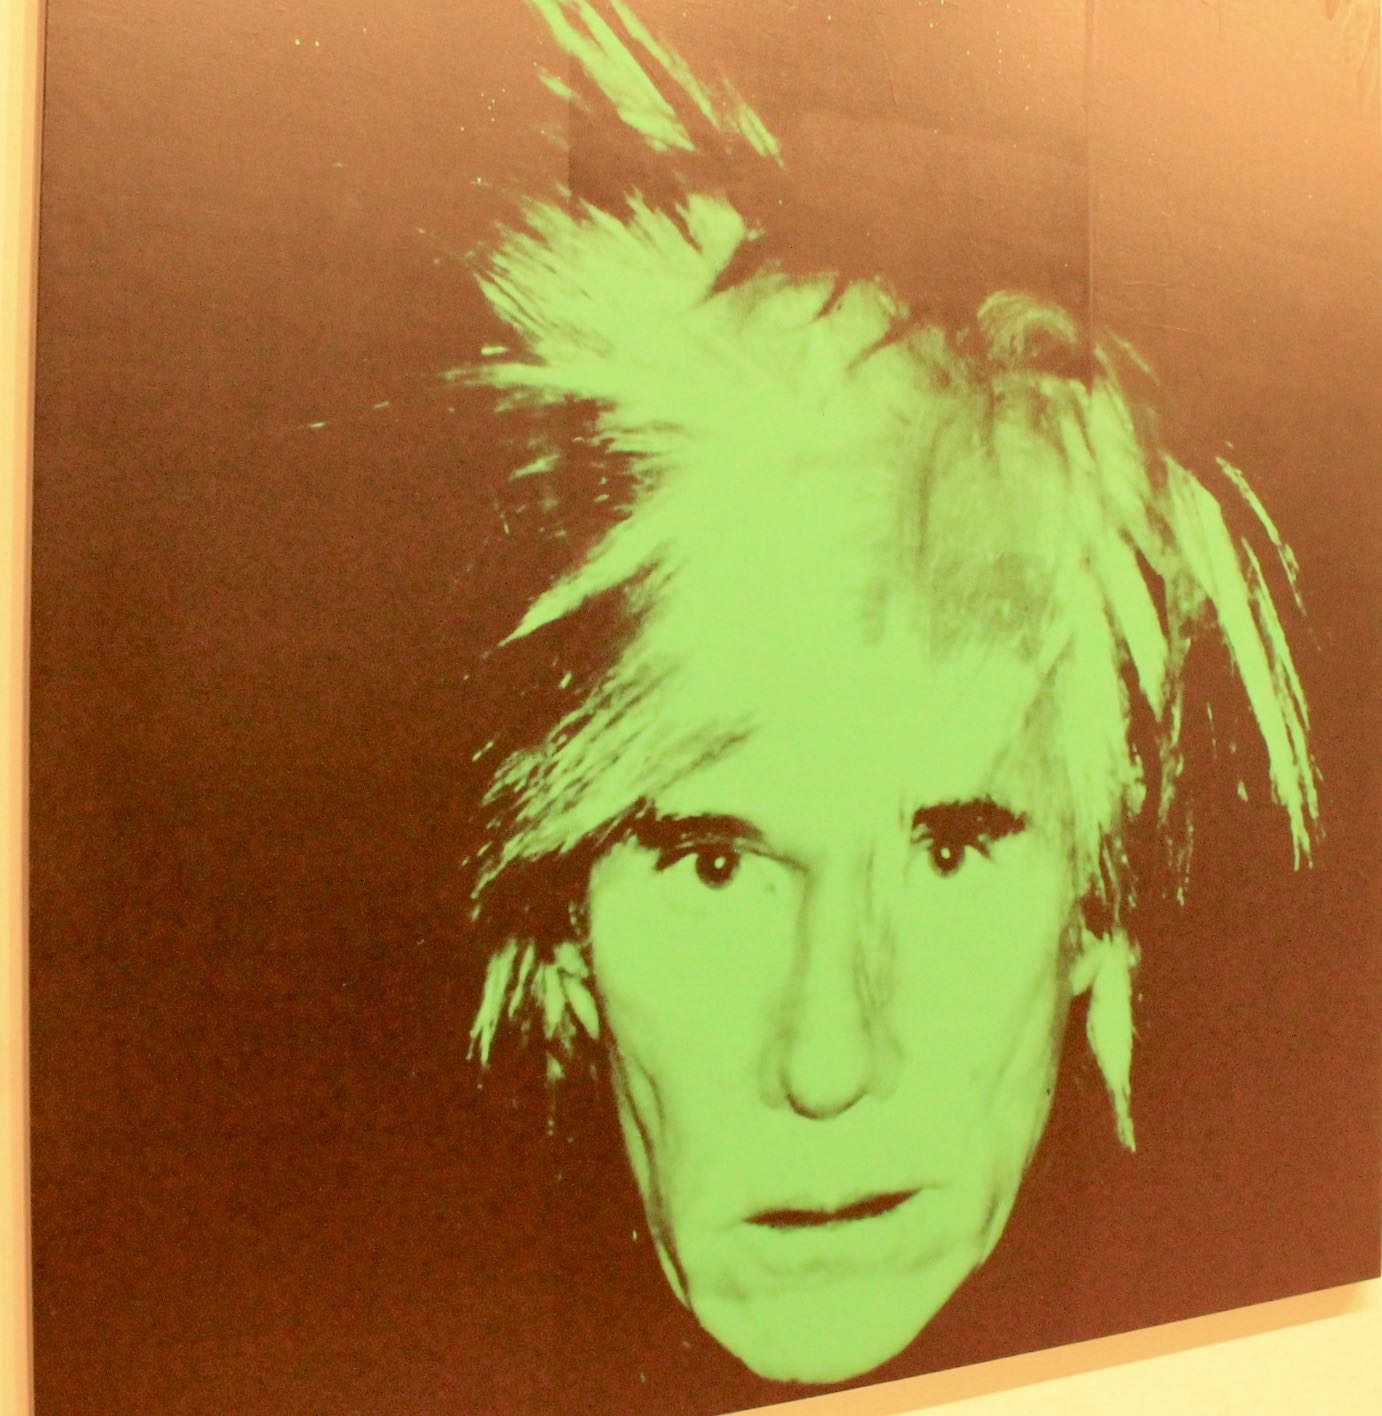 NYC, my Andy Warhol